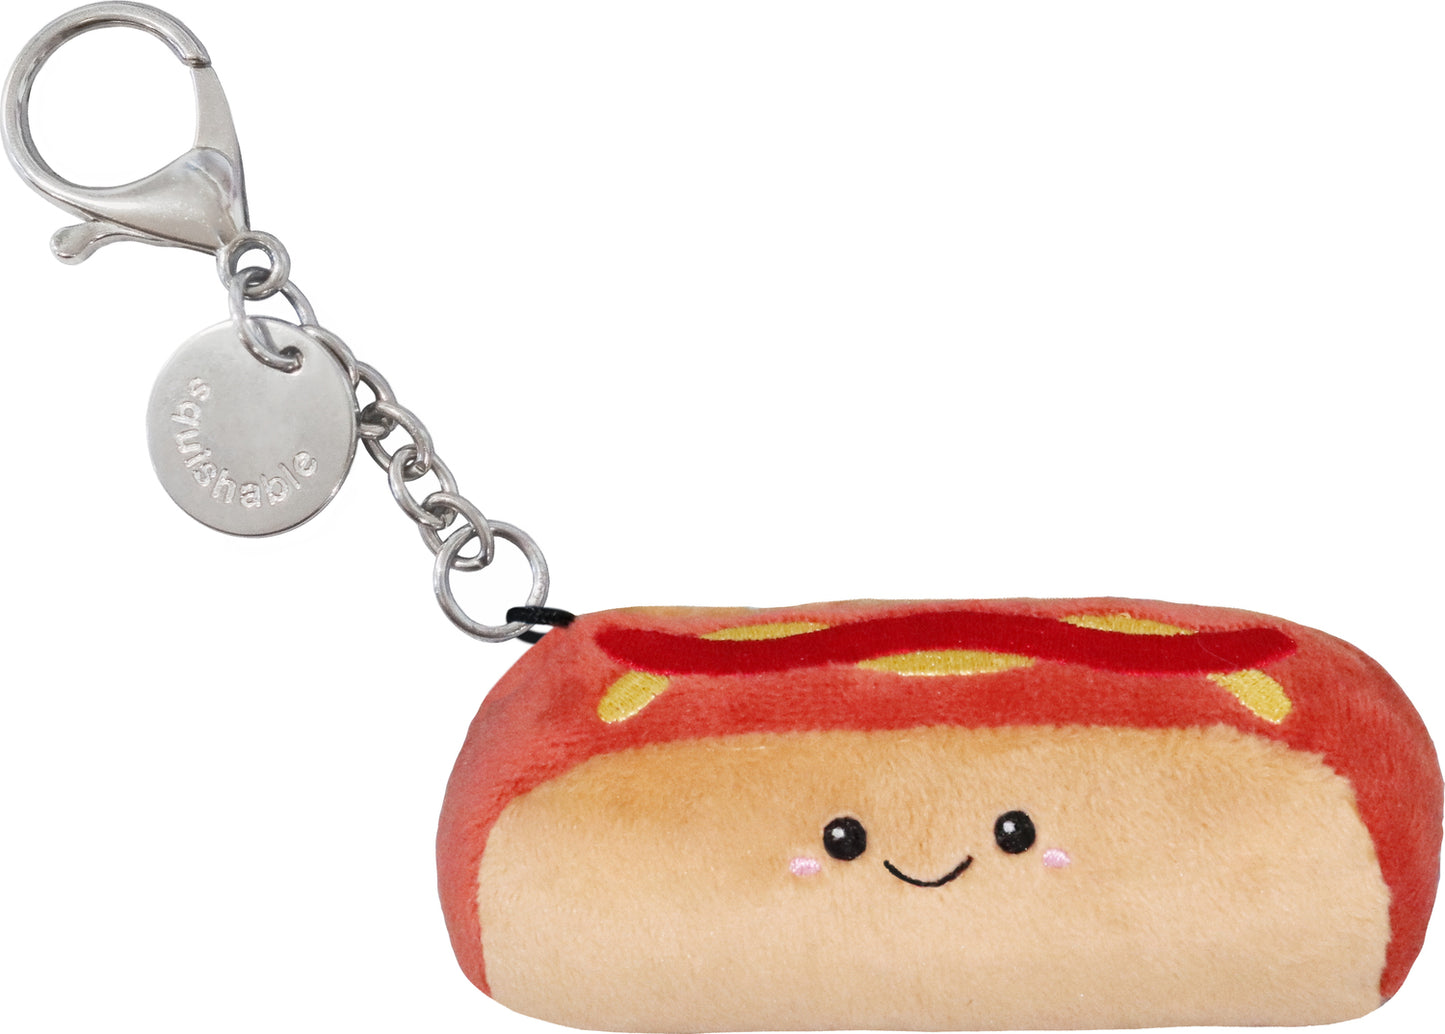 Micro Squishable Hot Dog